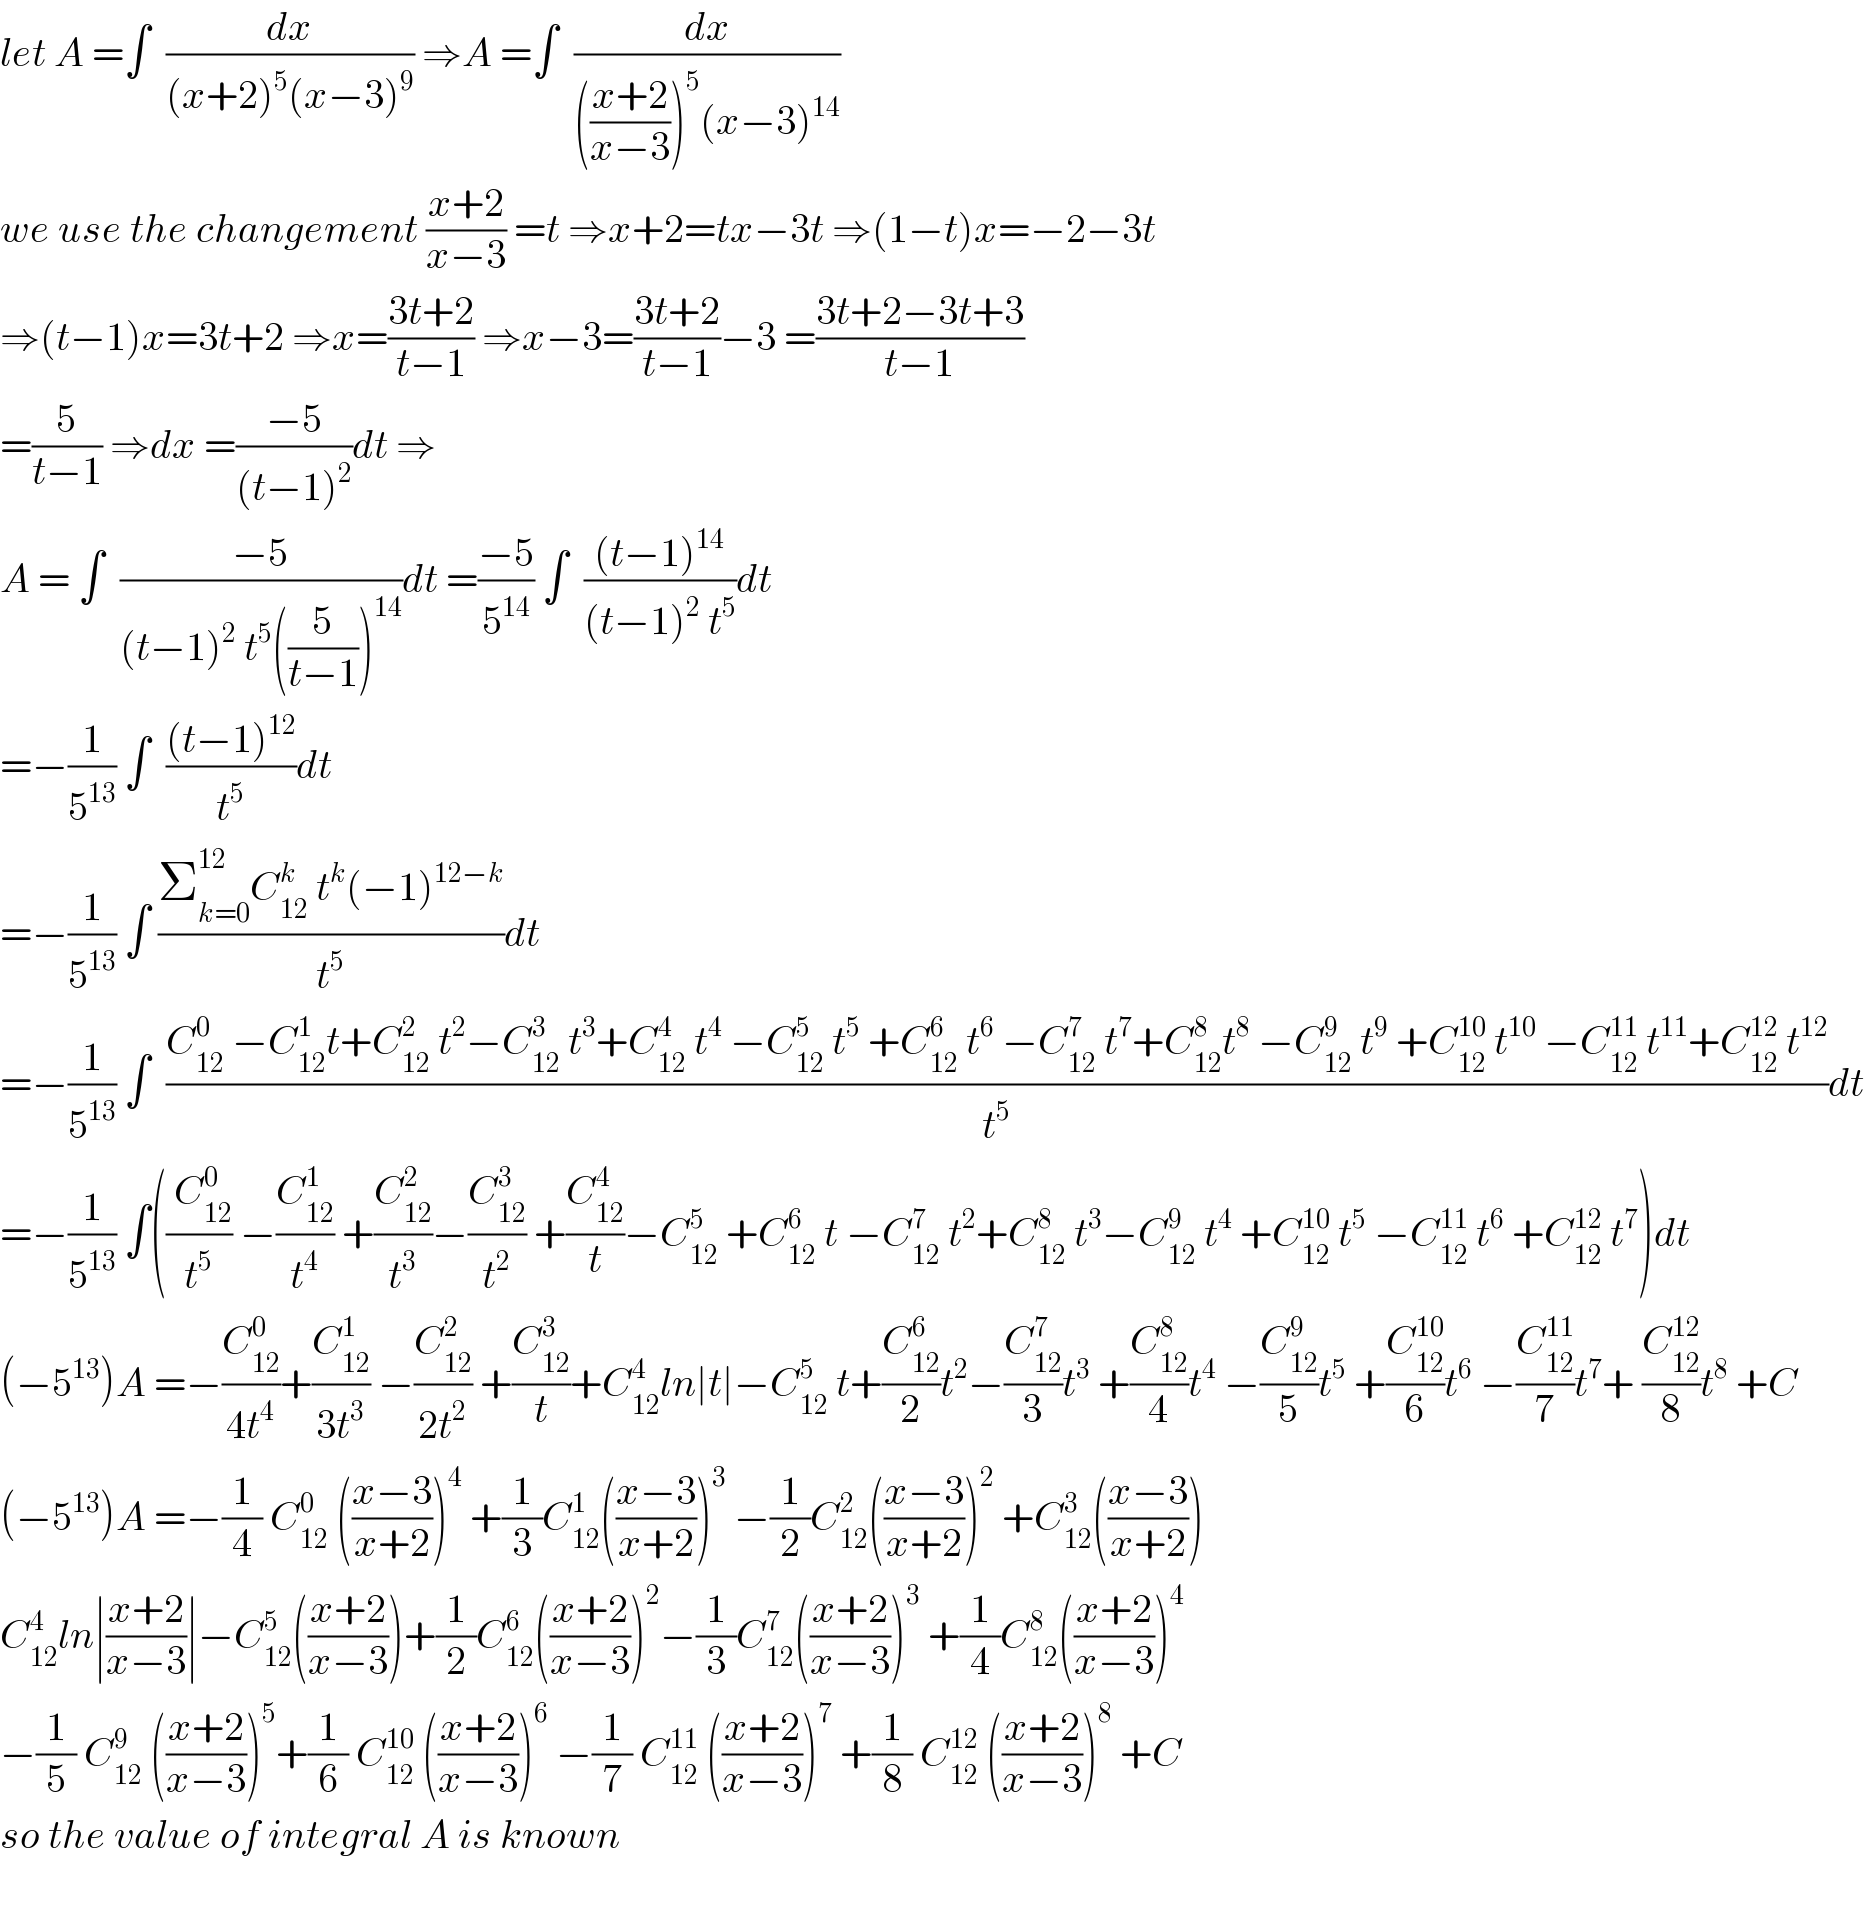 let A =∫  (dx/((x+2)^5 (x−3)^9 )) ⇒A =∫  (dx/((((x+2)/(x−3)))^5 (x−3)^(14) ))  we use the changement ((x+2)/(x−3)) =t ⇒x+2=tx−3t ⇒(1−t)x=−2−3t  ⇒(t−1)x=3t+2 ⇒x=((3t+2)/(t−1)) ⇒x−3=((3t+2)/(t−1))−3 =((3t+2−3t+3)/(t−1))  =(5/(t−1)) ⇒dx =((−5)/((t−1)^2 ))dt ⇒  A = ∫  ((−5)/((t−1)^2  t^5 ((5/(t−1)))^(14) ))dt =((−5)/5^(14) ) ∫  (((t−1)^(14) )/((t−1)^2  t^5 ))dt  =−(1/5^(13) ) ∫  (((t−1)^(12) )/t^5 )dt  =−(1/5^(13) ) ∫ ((Σ_(k=0) ^(12) C_(12) ^k  t^k (−1)^(12−k) )/t^5 )dt  =−(1/5^(13) ) ∫  ((C_(12) ^0  −C_(12) ^1 t+C_(12) ^2  t^2 −C_(12) ^3  t^3 +C_(12) ^4  t^4  −C_(12) ^5  t^5  +C_(12) ^6  t^6  −C_(12) ^7  t^7 +C_(12) ^8 t^8  −C_(12) ^9  t^9  +C_(12) ^(10)  t^(10)  −C_(12) ^(11)  t^(11) +C_(12) ^(12)  t^(12) )/t^5 )dt   =−(1/5^(13) ) ∫((( C_(12) ^0 )/t^5 ) −(C_(12) ^1 /t^4 ) +(C_(12) ^2 /t^3 )−(C_(12) ^3 /t^2 ) +(C_(12) ^4 /t)−C_(12) ^5  +C_(12) ^6  t −C_(12) ^7  t^2 +C_(12) ^8  t^3 −C_(12) ^9  t^4  +C_(12) ^(10)  t^5  −C_(12) ^(11)  t^6  +C_(12) ^(12)  t^7 )dt  (−5^(13) )A =−(C_(12) ^0 /(4t^4 ))+(C_(12) ^1 /(3t^3 )) −(C_(12) ^2 /(2t^2 )) +(C_(12) ^3 /t)+C_(12) ^4 ln∣t∣−C_(12) ^5  t+(C_(12) ^6 /2)t^2 −(C_(12) ^7 /3)t^3  +(C_(12) ^8 /4)t^4  −(C_(12) ^9 /5)t^5  +(C_(12) ^(10) /6)t^6  −(C_(12) ^(11) /7)t^7 + (C_(12) ^(12) /8)t^8  +C  (−5^(13) )A =−(1/4) C_(12) ^0  (((x−3)/(x+2)))^4  +(1/3)C_(12) ^1 (((x−3)/(x+2)))^3  −(1/2)C_(12) ^2 (((x−3)/(x+2)))^2  +C_(12) ^3 (((x−3)/(x+2)))  C_(12) ^4 ln∣((x+2)/(x−3))∣−C_(12) ^5 (((x+2)/(x−3)))+(1/2)C_(12) ^6 (((x+2)/(x−3)))^2 −(1/3)C_(12) ^7 (((x+2)/(x−3)))^3  +(1/4)C_(12) ^8 (((x+2)/(x−3)))^4   −(1/5) C_(12) ^9  (((x+2)/(x−3)))^5 +(1/6) C_(12) ^(10)  (((x+2)/(x−3)))^6  −(1/7) C_(12) ^(11)  (((x+2)/(x−3)))^7  +(1/8) C_(12) ^(12)  (((x+2)/(x−3)))^8  +C  so the value of integral A is known    